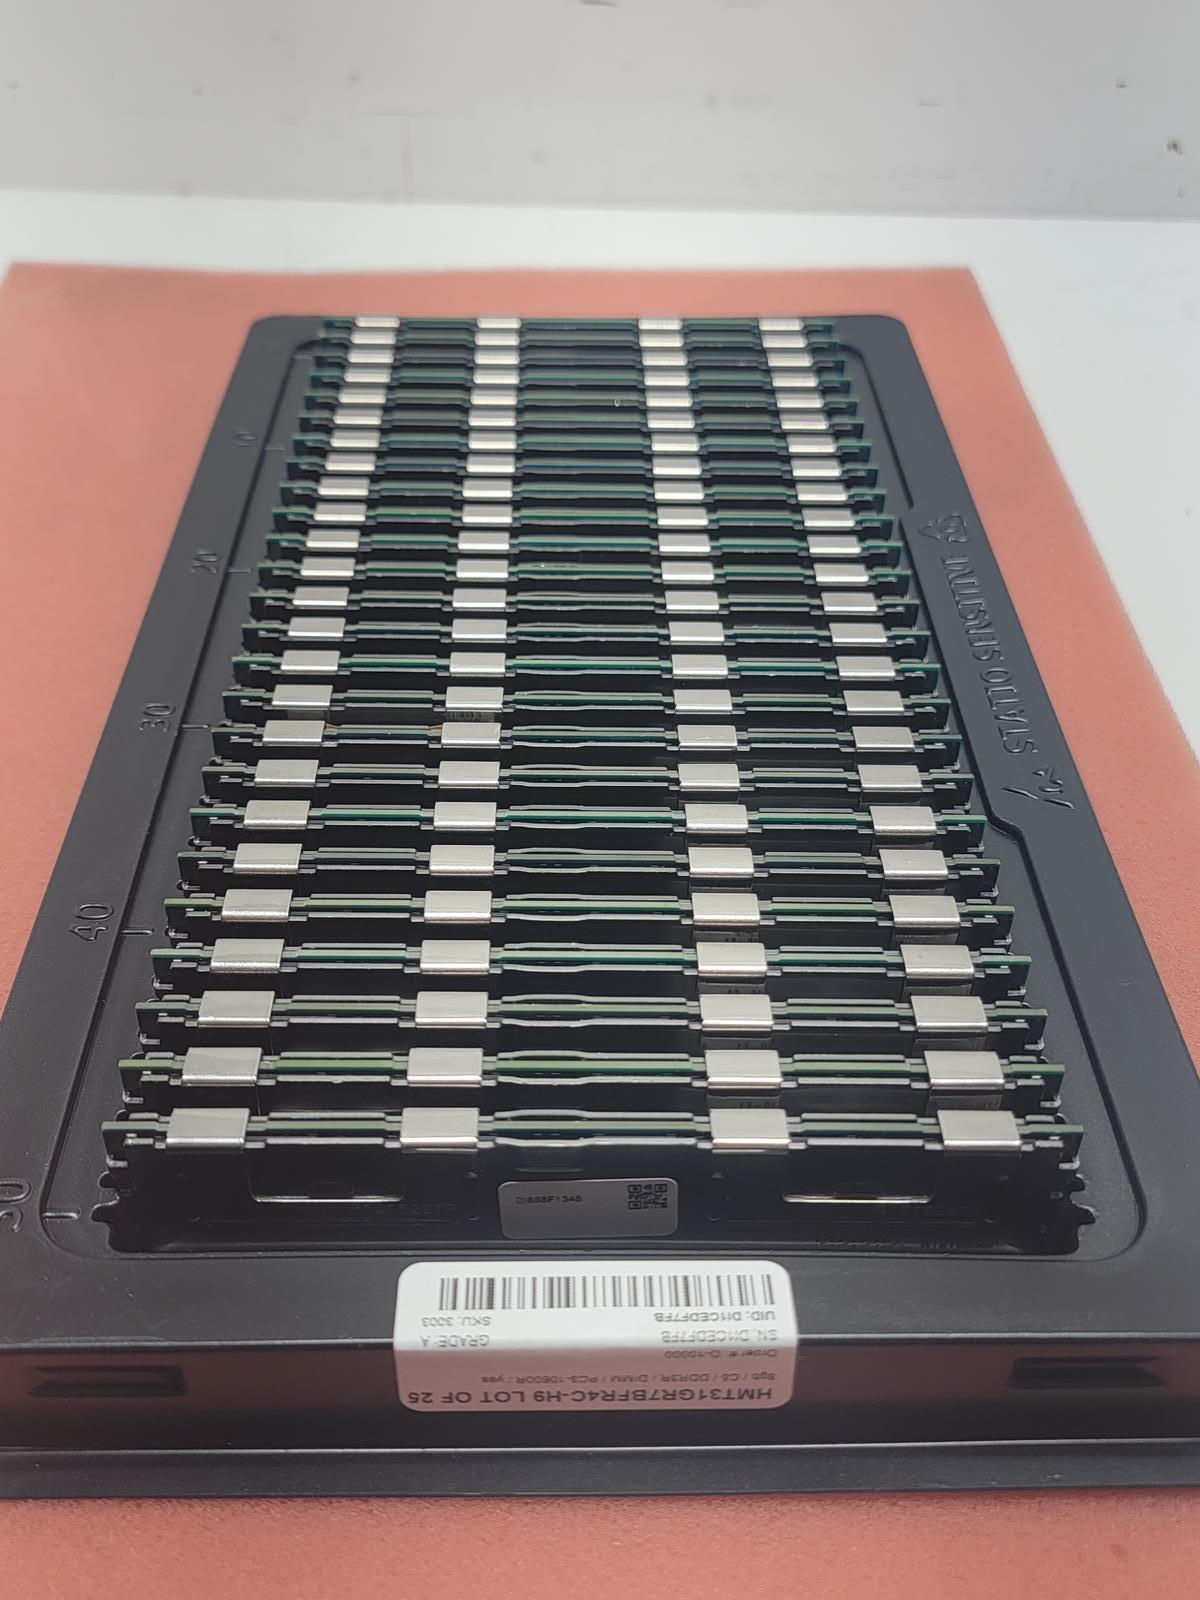 Lot of 25 DDR3R Reg/ECC HMT31GR7BFR4C-H9 8gb pc3-10600r Server memory  SKU 4706